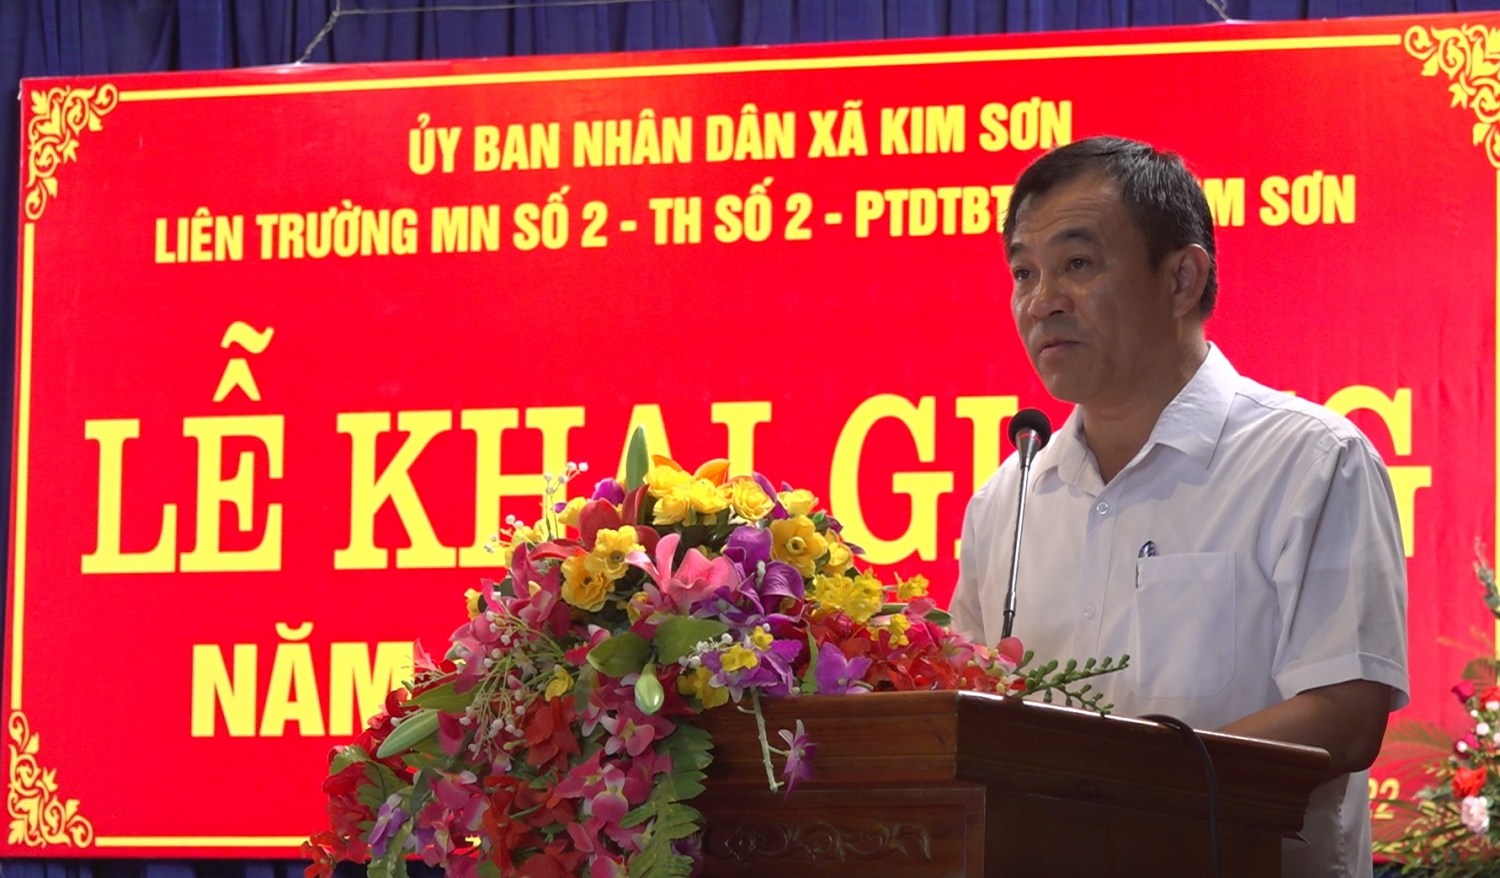 Đồng chí Phạm Toàn Thắng, Ủy viên Ban Thường vụ, Trưởng ban Tổ chức Tỉnh ủy phát biểu tại Lễ khai giảng